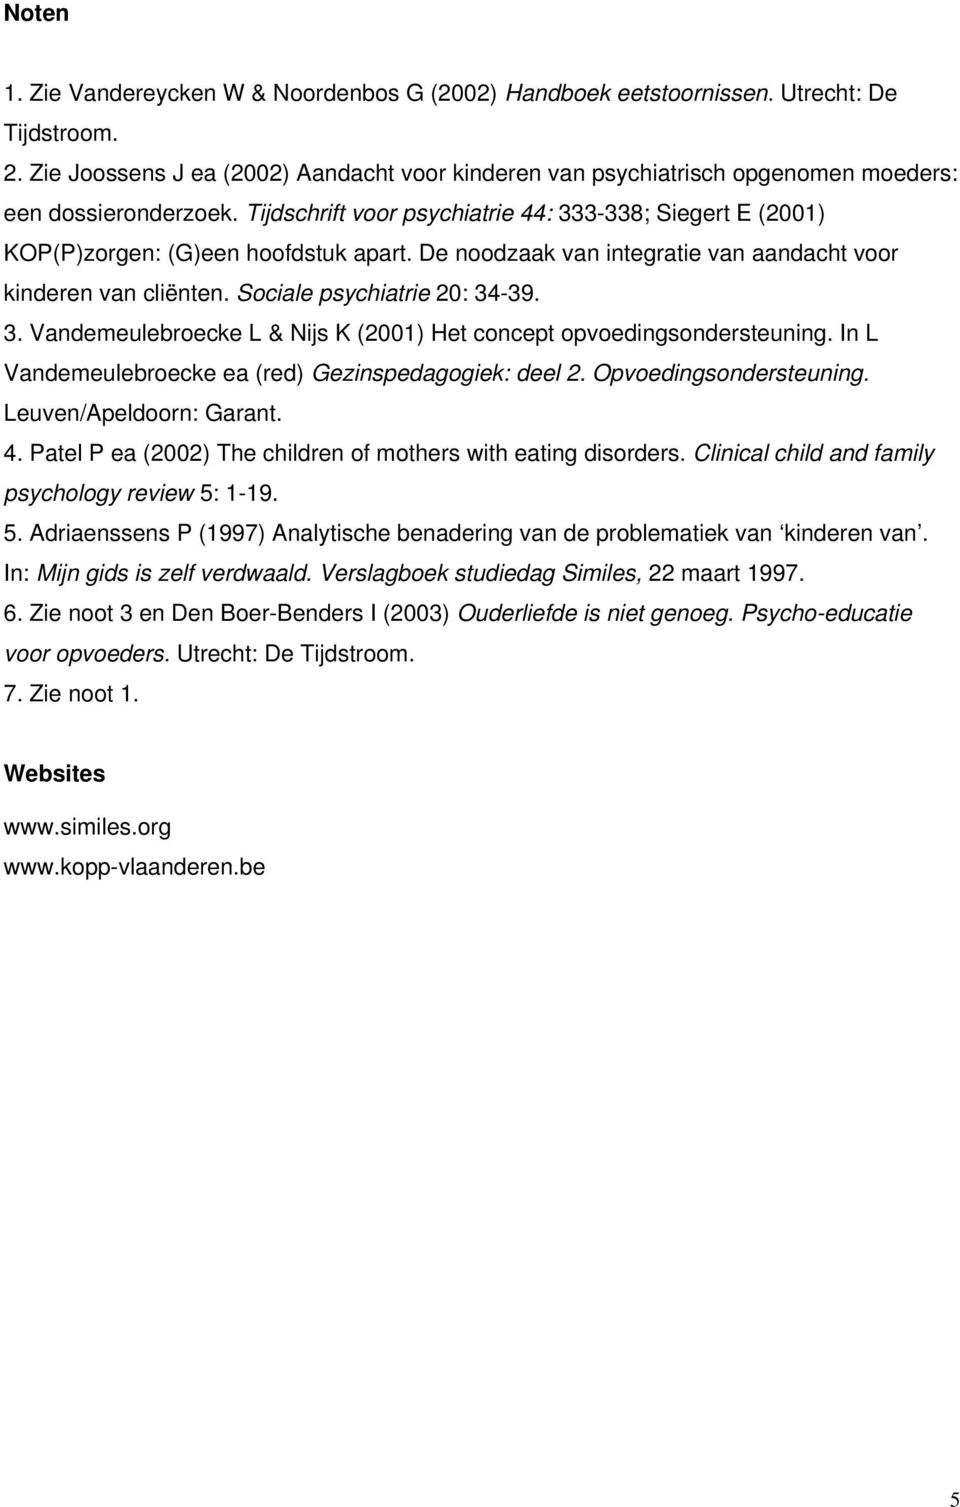 Tijdschrift voor psychiatrie 44: 333-338; Siegert E (2001) KOP(P)zorgen: (G)een hoofdstuk apart. De noodzaak van integratie van aandacht voor kinderen van cliënten. Sociale psychiatrie 20: 34-39. 3. Vandemeulebroecke L & Nijs K (2001) Het concept opvoedingsondersteuning.